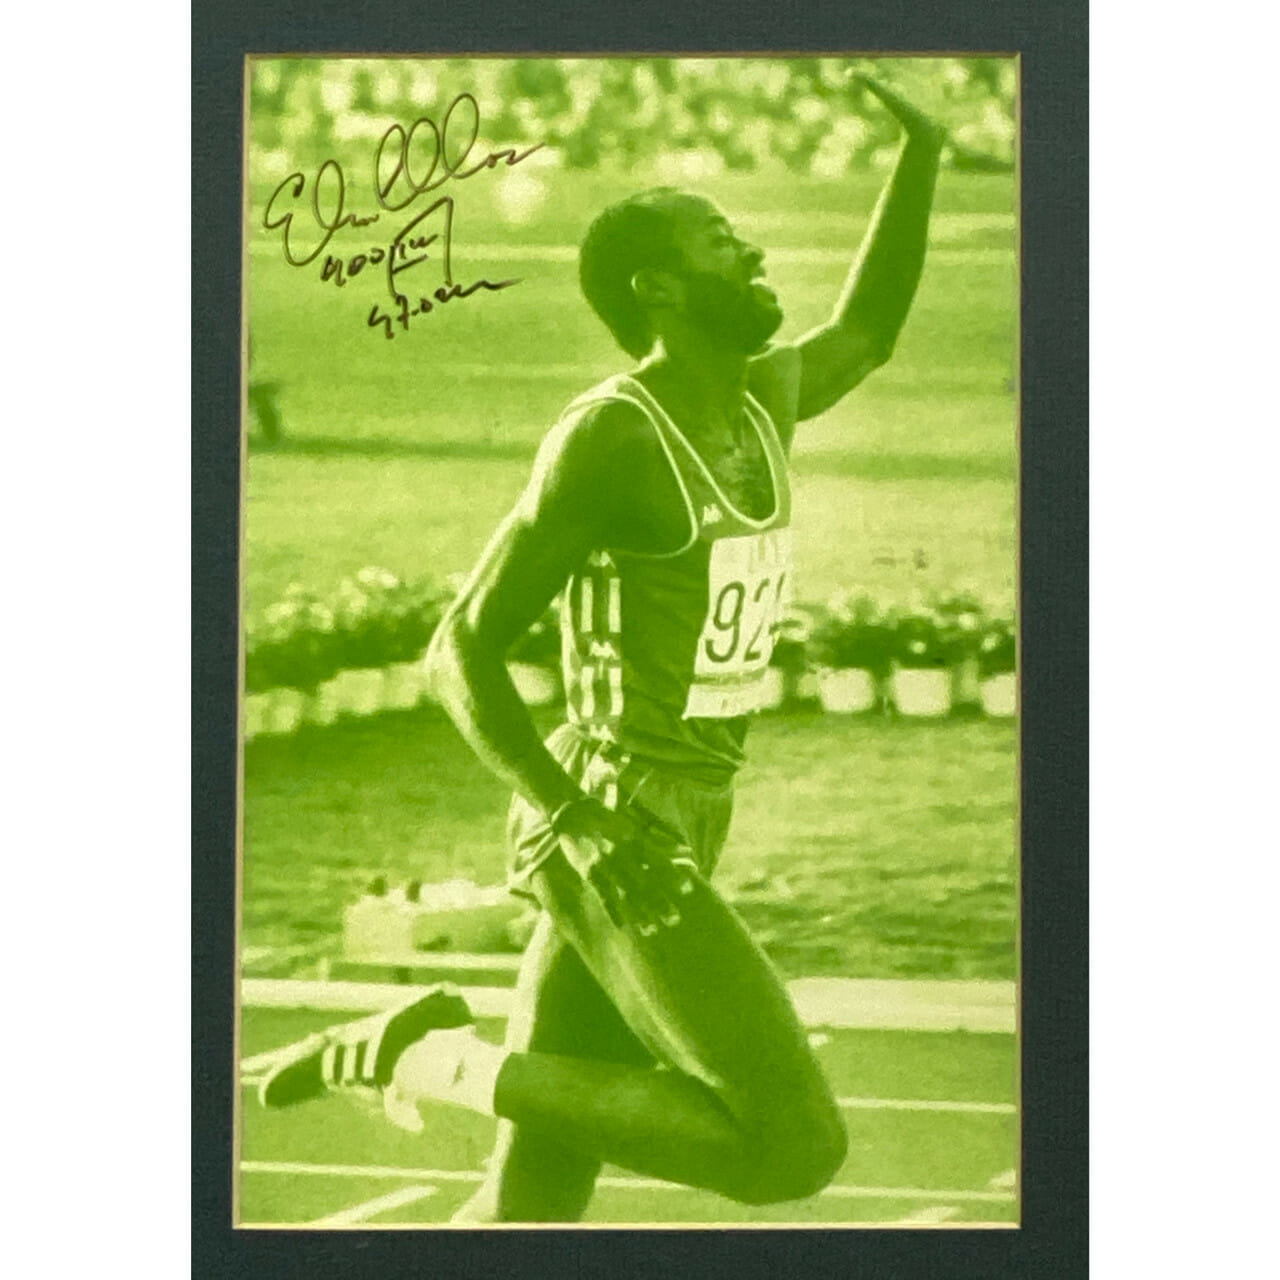 EDWIN MOSES SIGNED PHOTO - 400M HURDLES WIN AT '84 OLYMPICS #41310